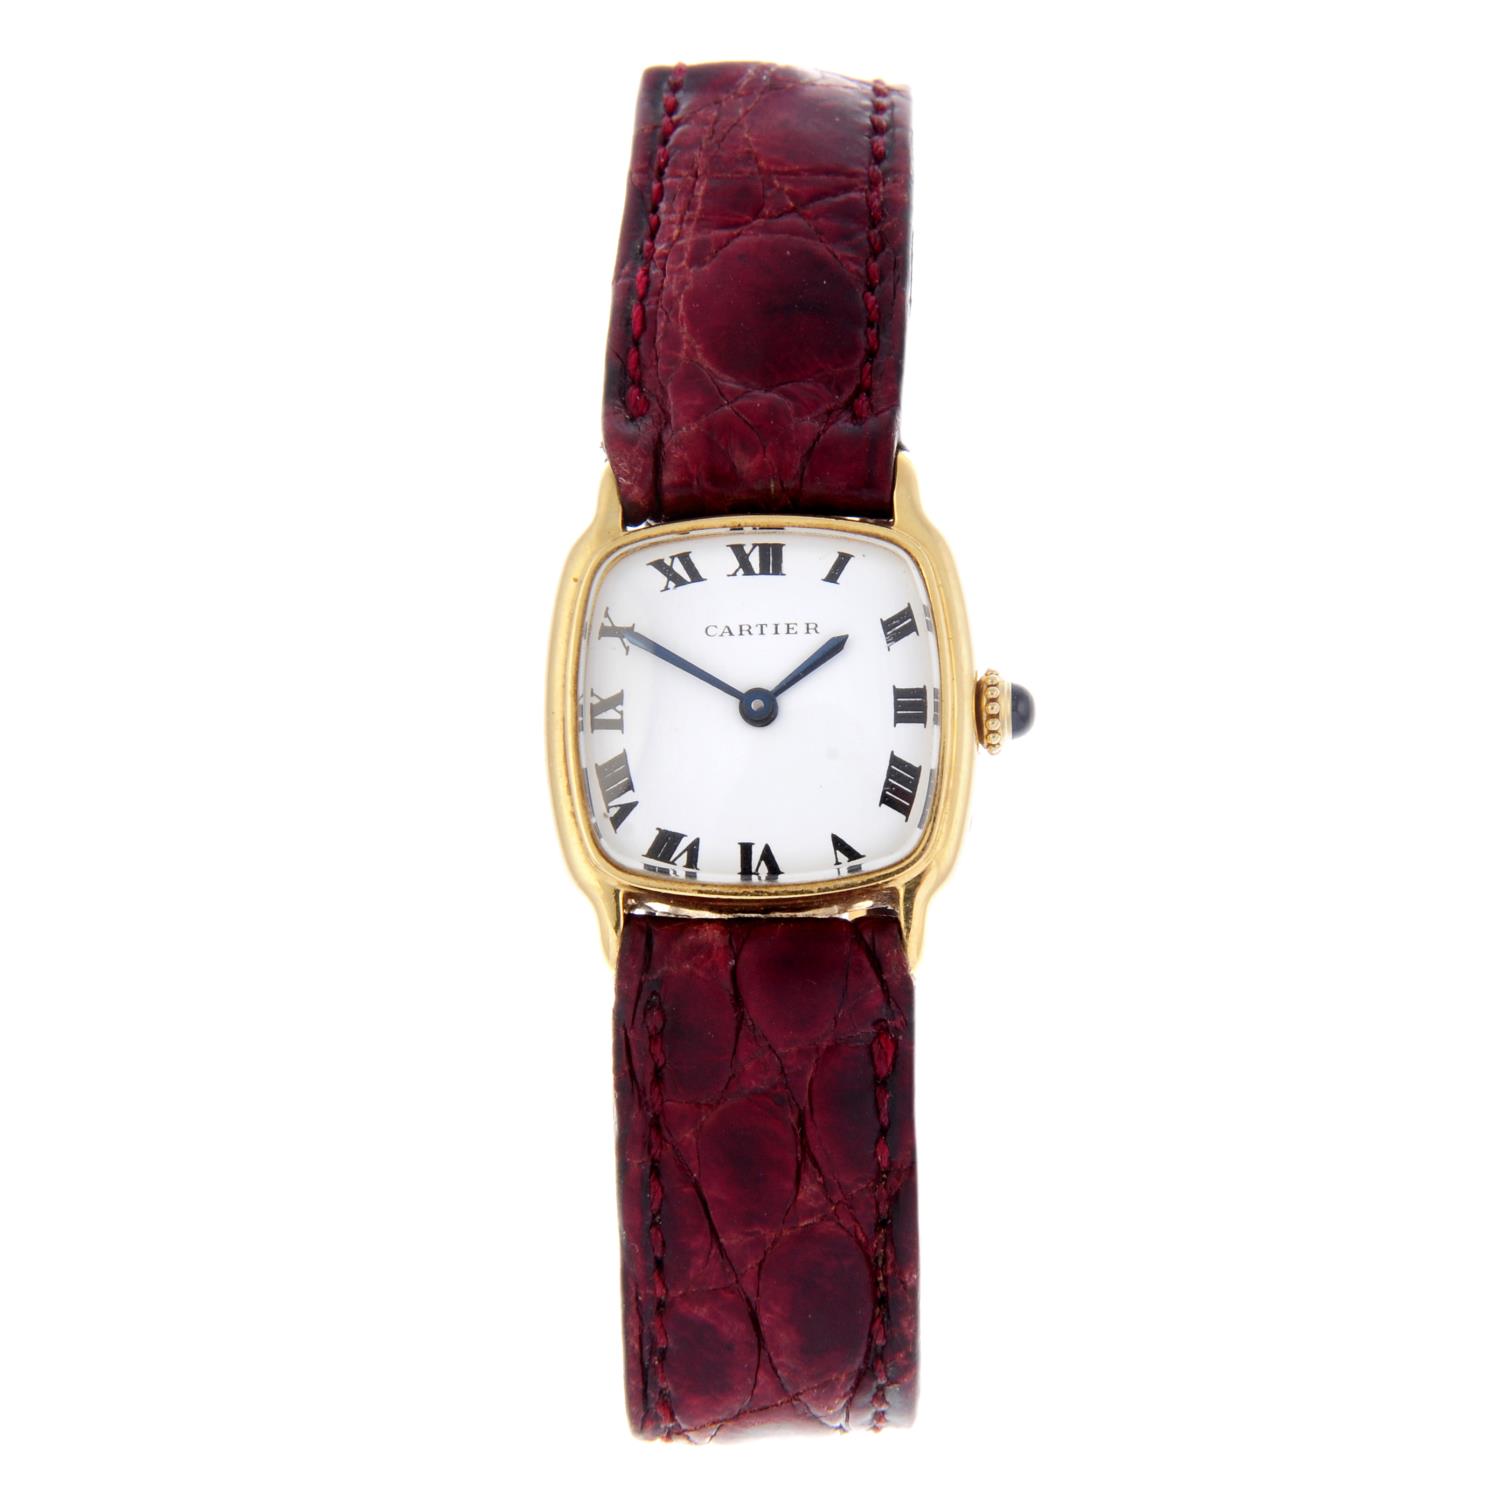 CARTIER - a Chambord wrist watch.